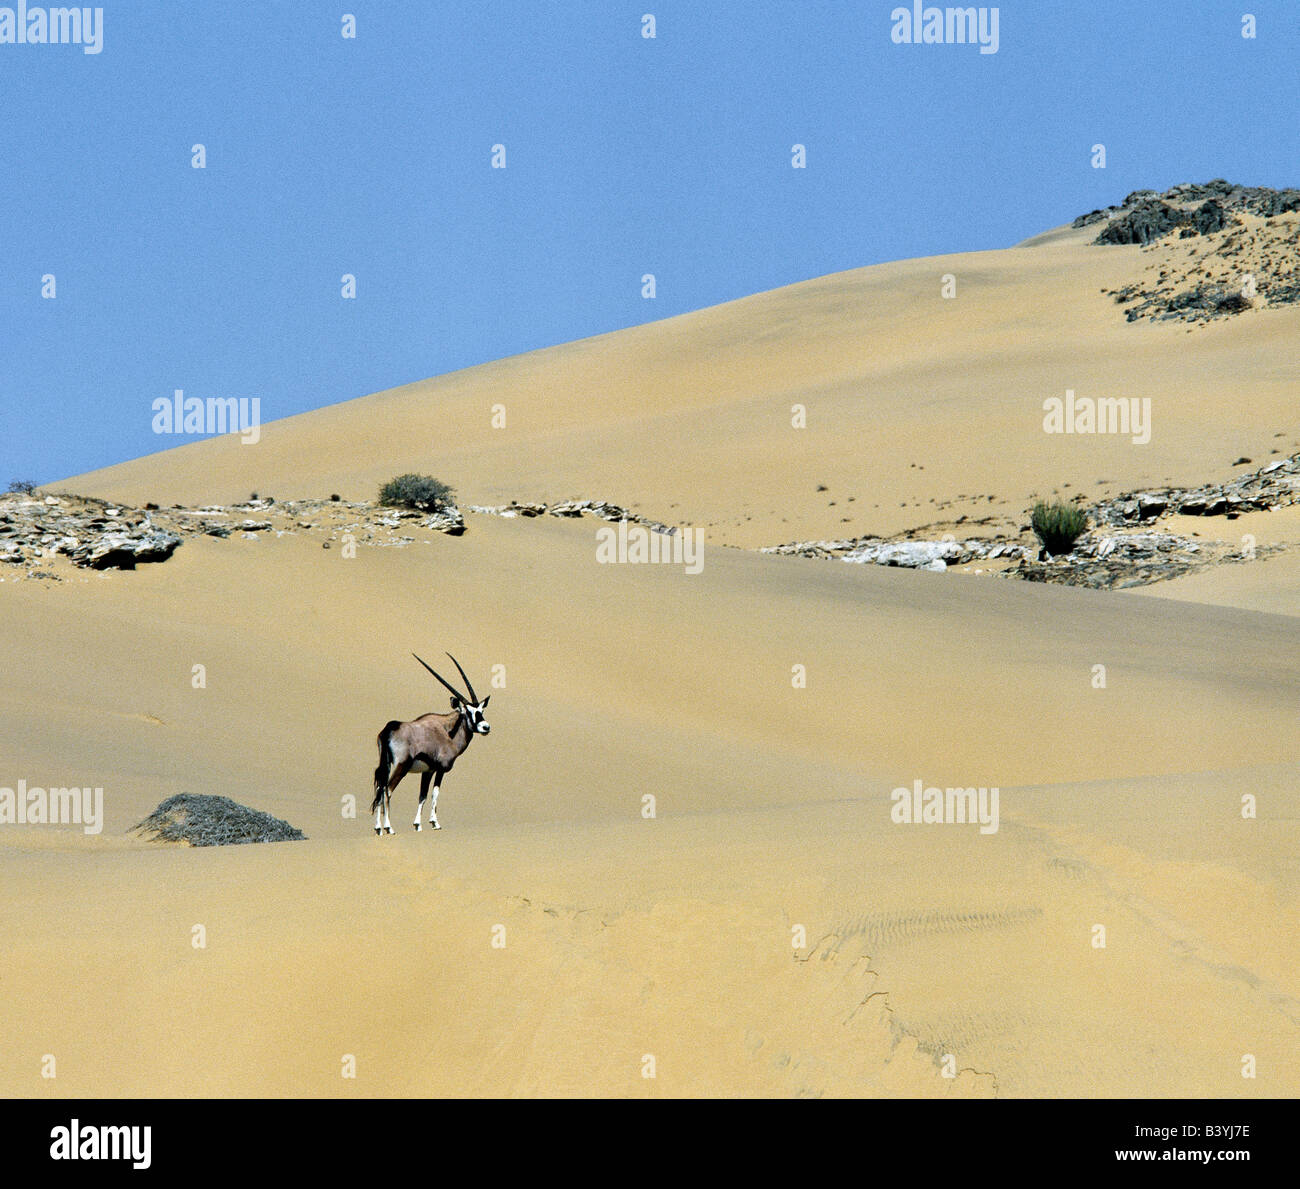 La Namibie, Côte des Squelettes, de la rivière Hoarusib. Un sud de l'oryx, ou Gemsbok, s'arrête sur les dunes de sable s'élevant de la rivière Hoarusib saisonniers en Namibie Skeleton Coast Park's remote.Cette antilope à col épais avec de longues cornes droites, est une espèce de désert et va survivre pendant de longues périodes dans des endroits secs en léchant l'humidité de plantes et arbustes déposés par la mer de brouillard ou brouillard, qui roulent à l'intérieur des terres sur une brise de mer du sud-ouest de l'océan Atlantique. Banque D'Images